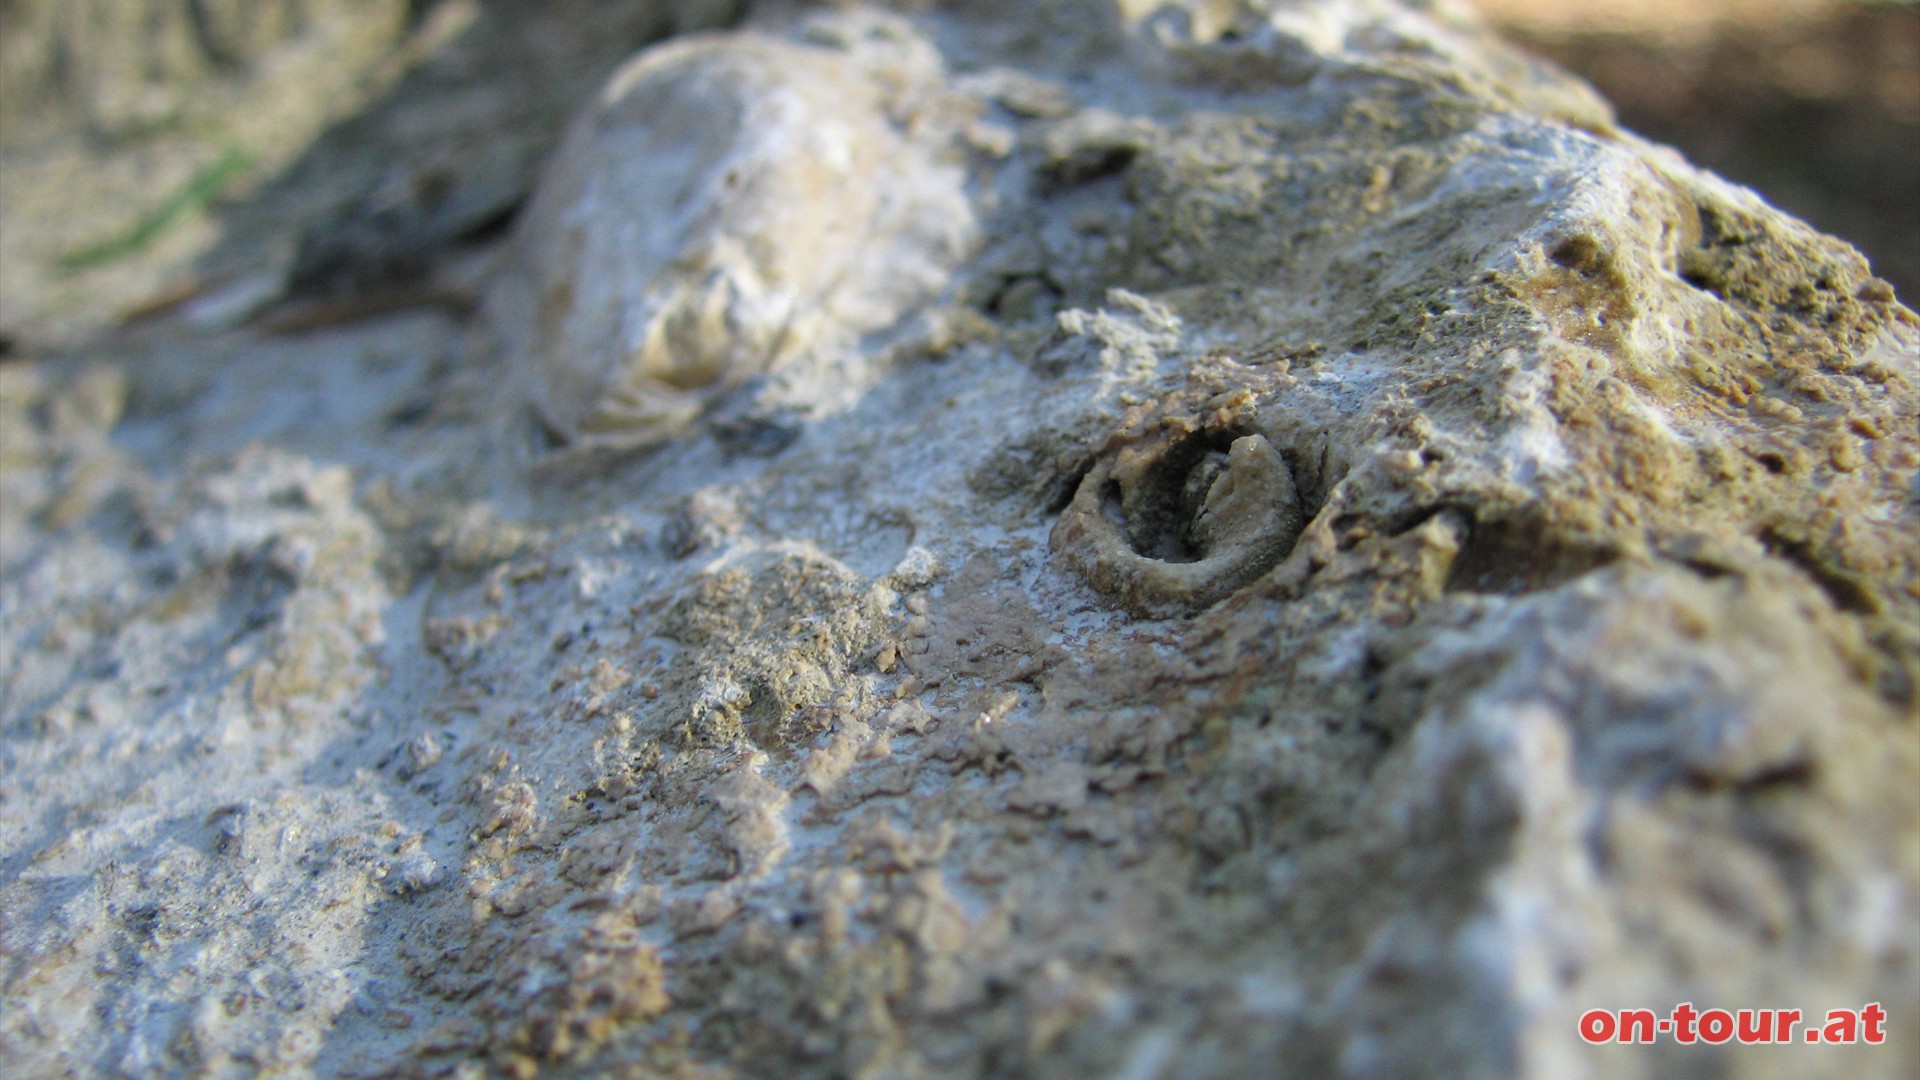 Wir betrachten die Gesteine nher und erkennen bei einer weiteren Station interessante Details. In diesem Fossilkalk sind versteinerte Gehuse von Meeresbewohnern noch hervorragend erhalten.